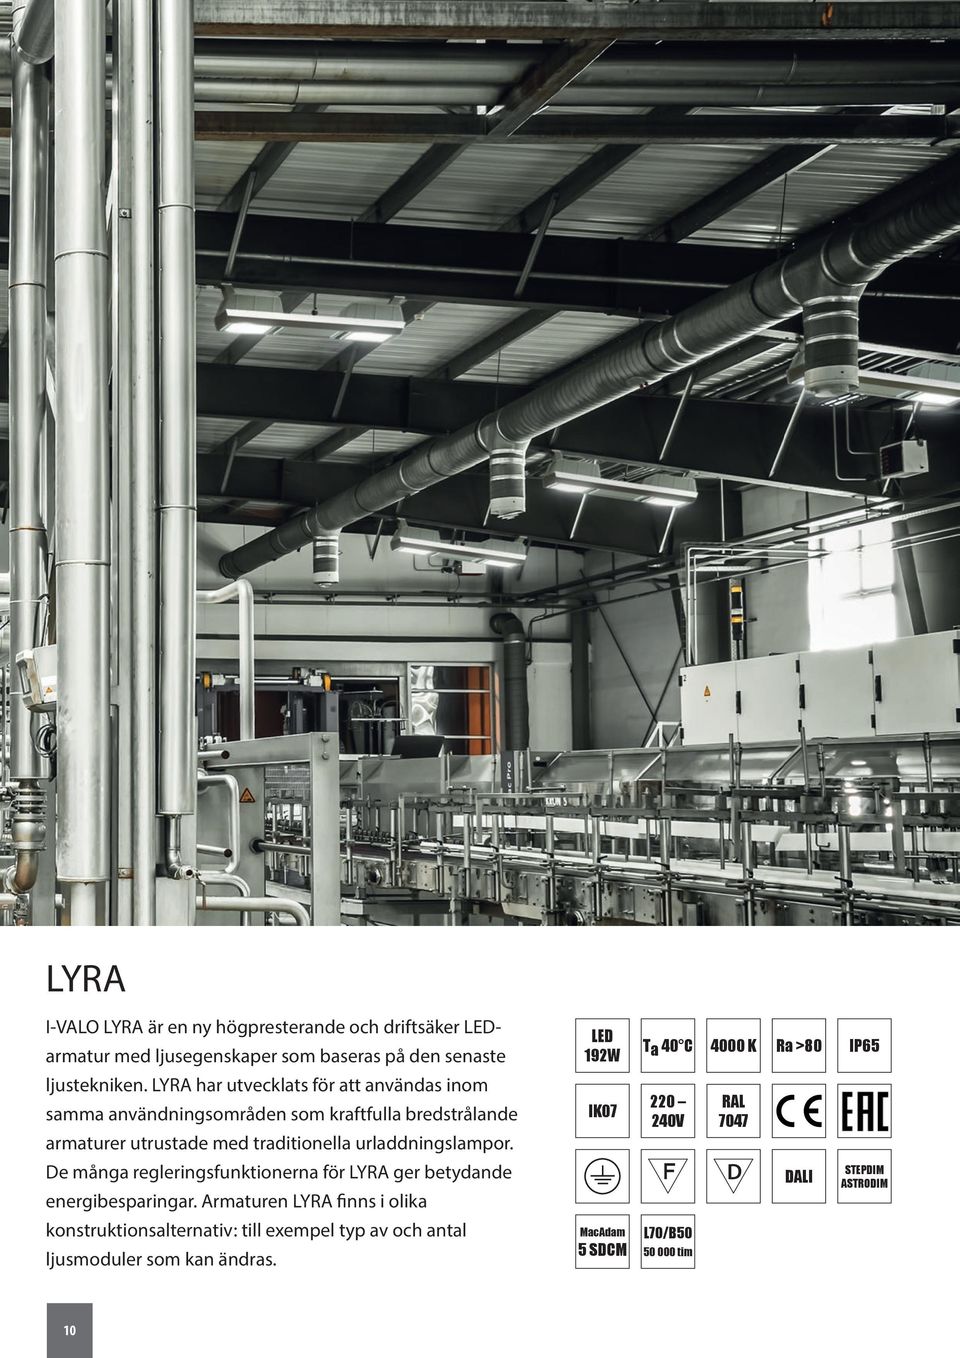 urladdningslampor. De många regleringsfunktionerna för LYRA ger betydande energibesparingar.